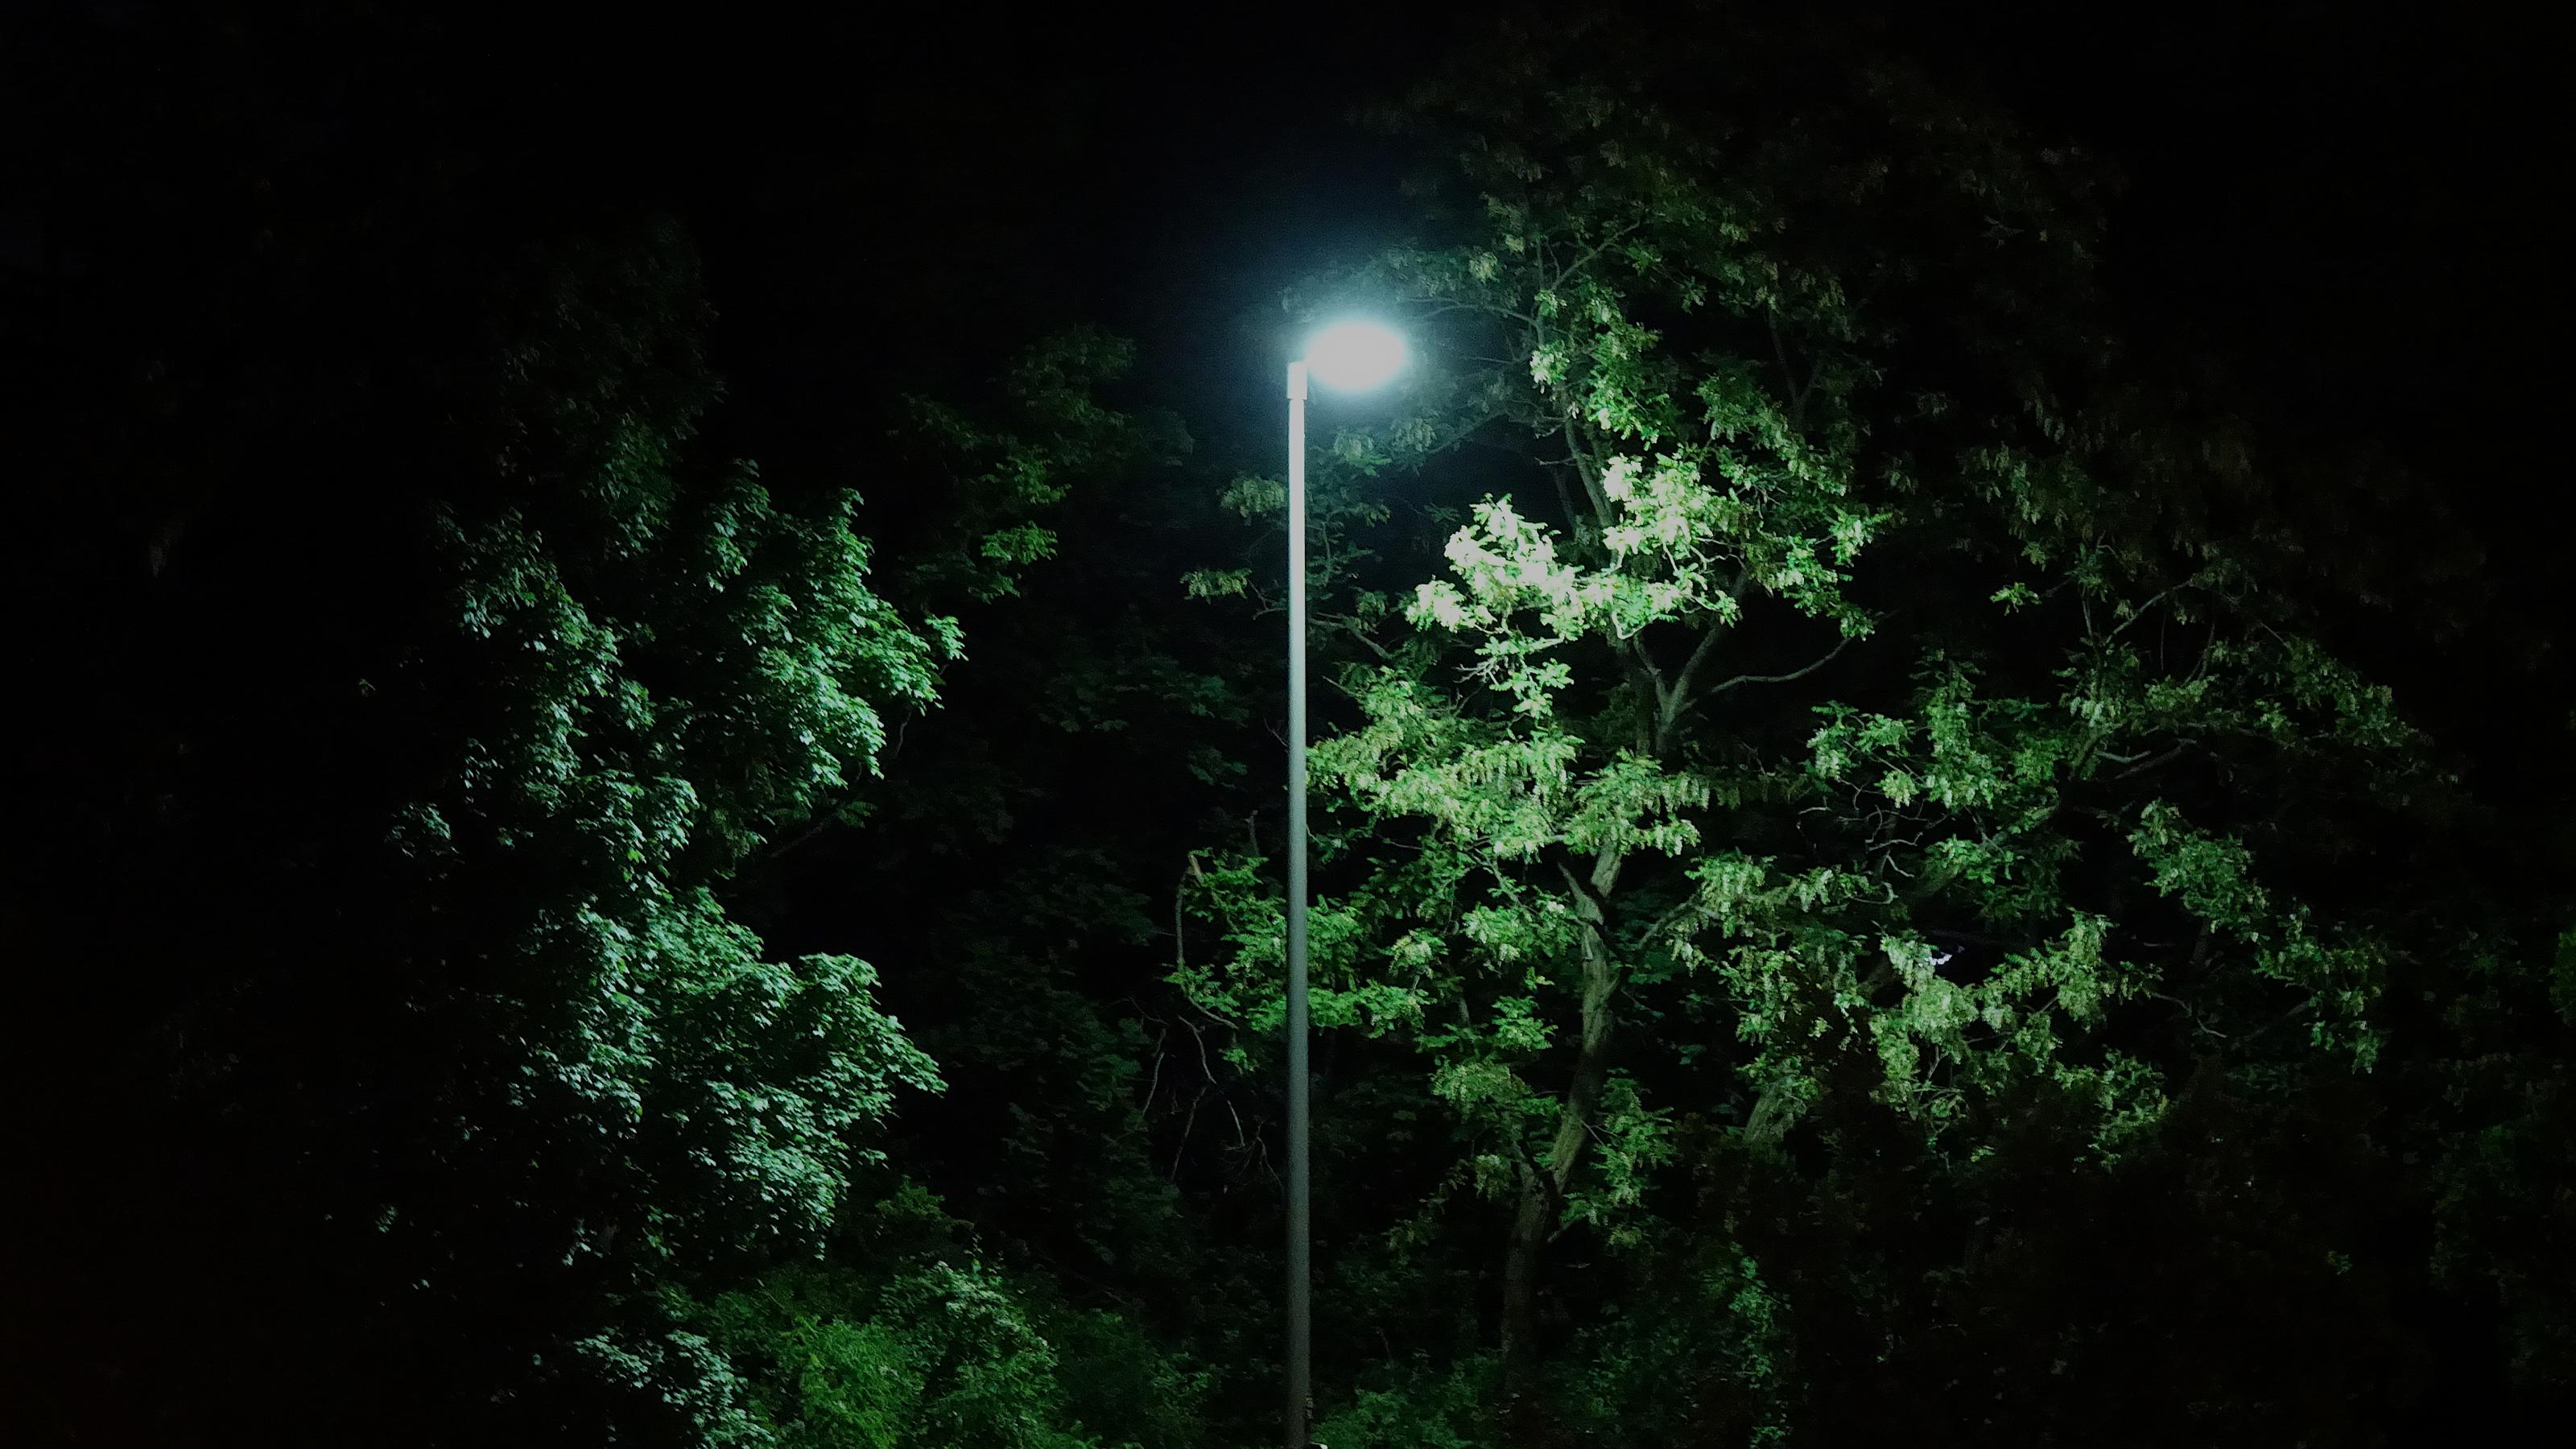 Ein heller Lichtstrahl erleuchtet die Blätter von Bäumen, in denen eine Nachtigall lebt.